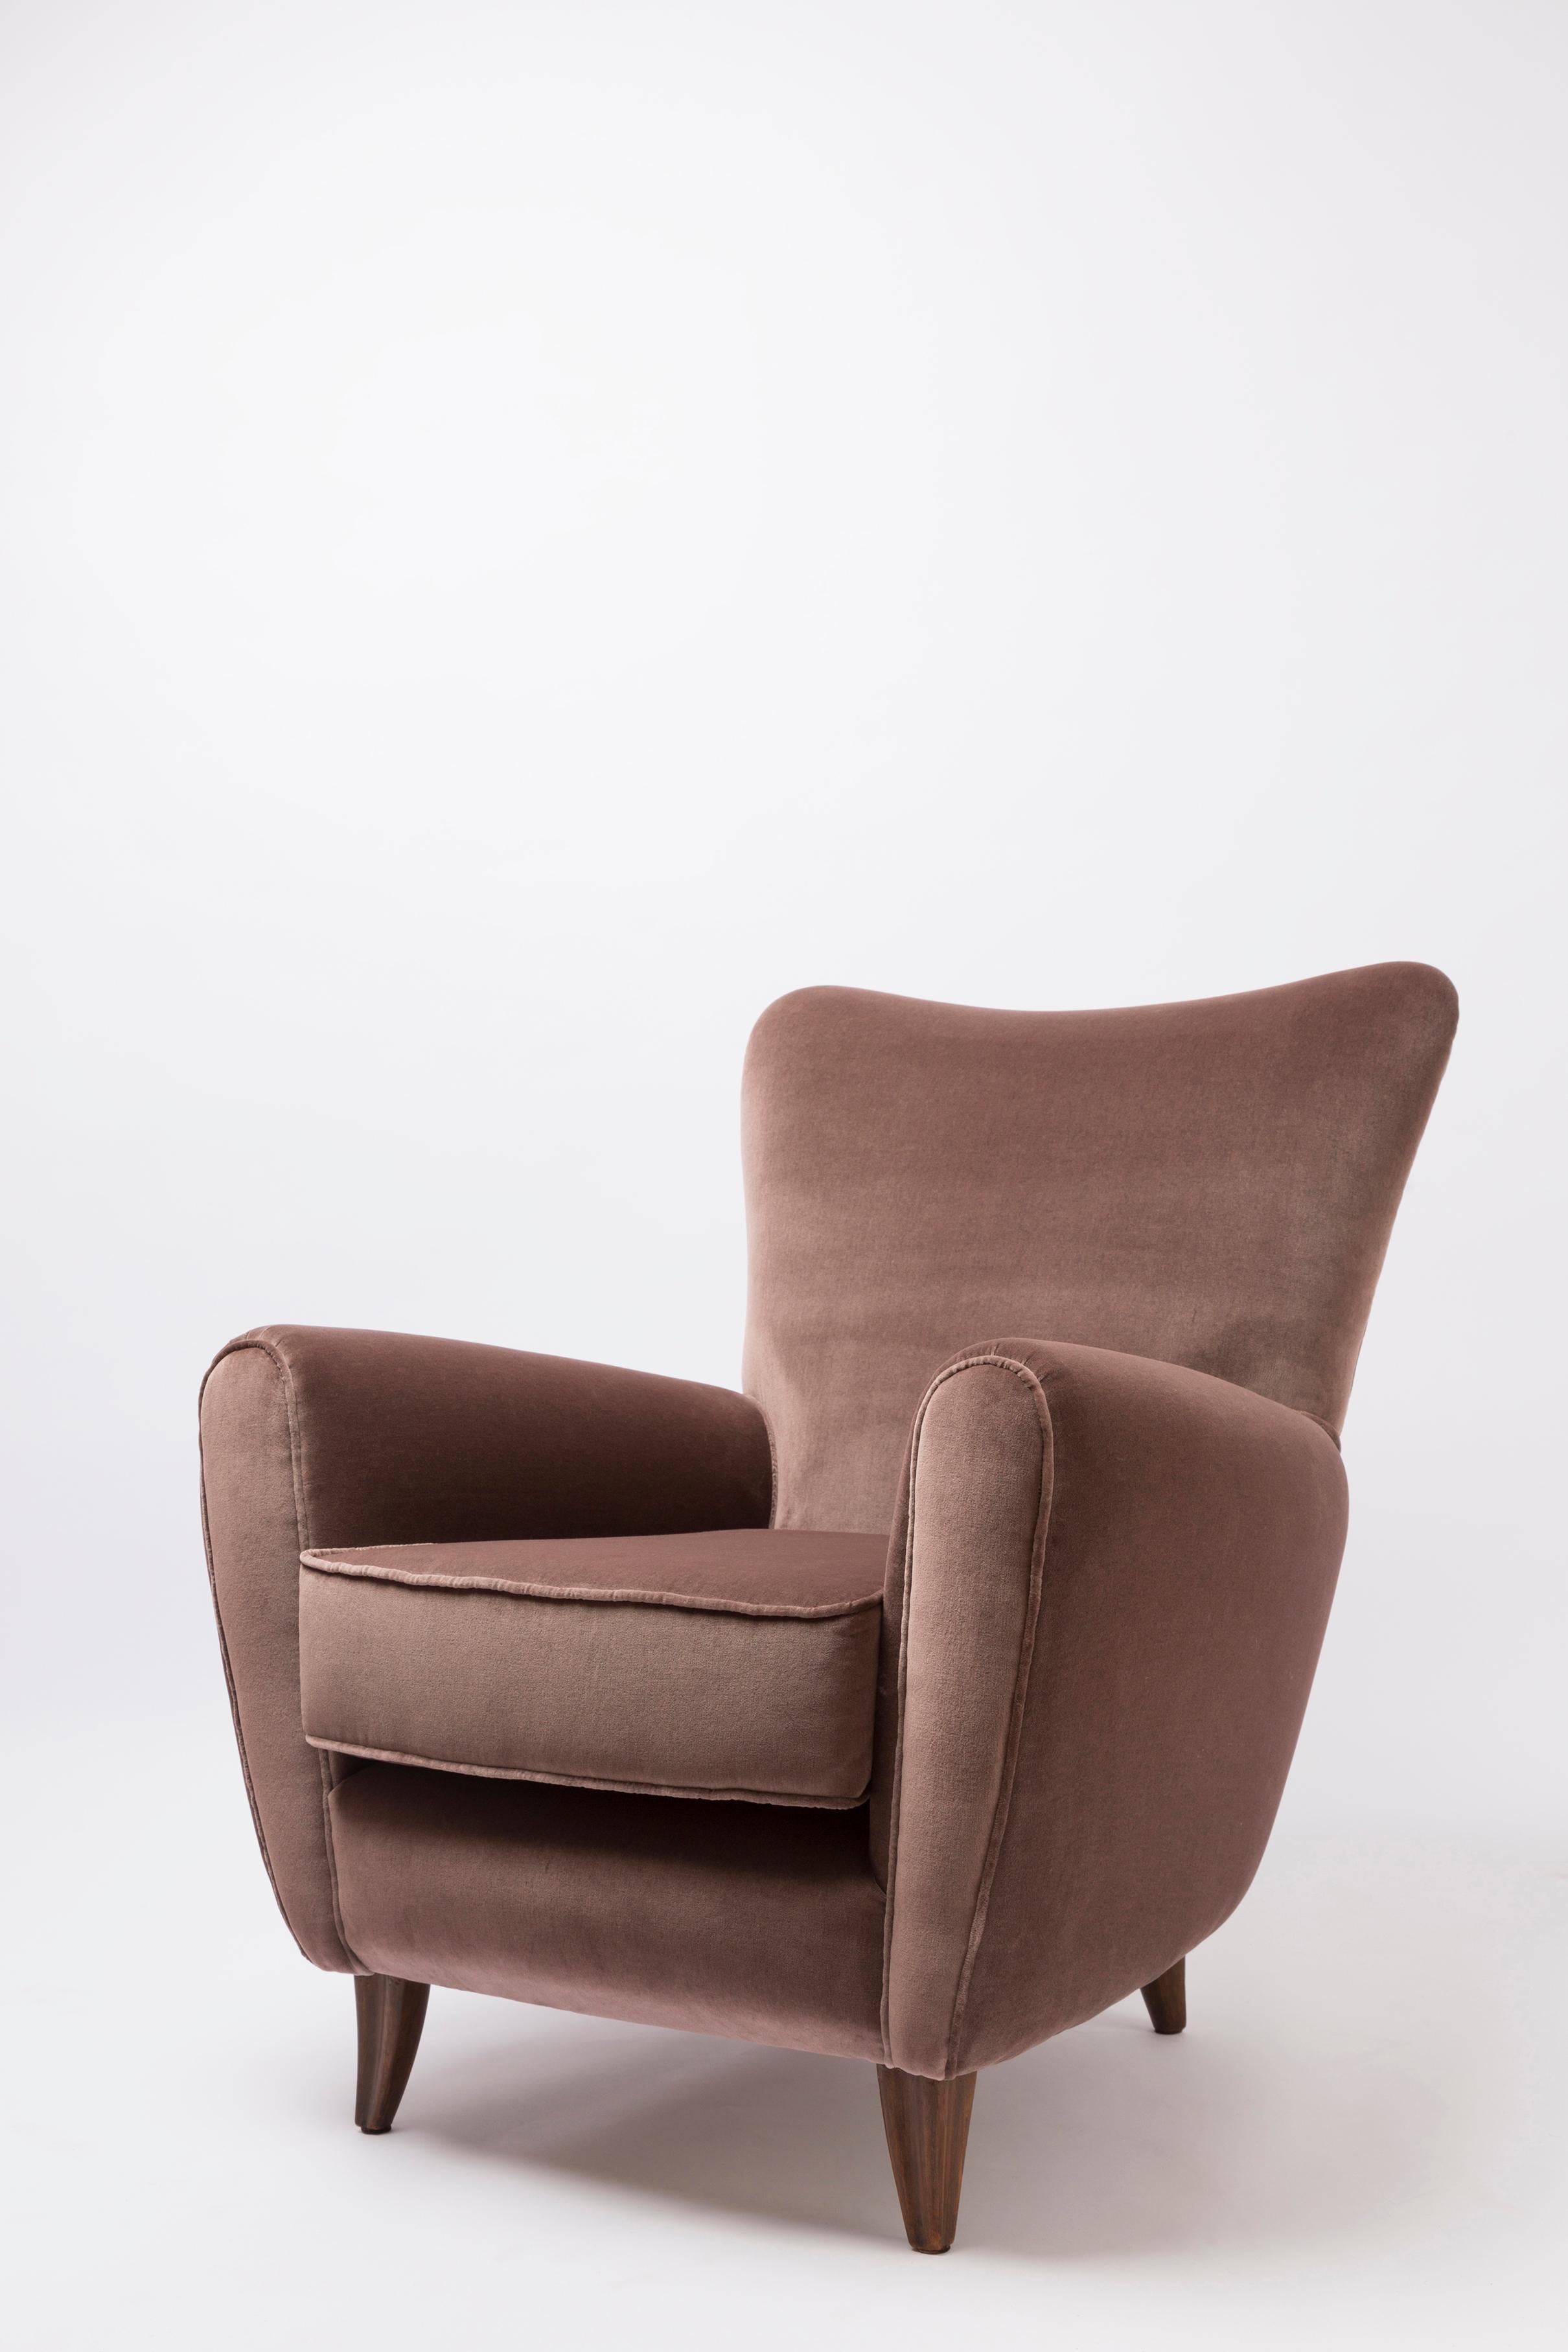 Paar seltene Sessel aus der Mitte des Jahrhunderts von dem sehr anspruchsvollen italienischen Designer Pierluigi Colli (1895 -1968)
(Modellnummer 556) wurde 1955 speziell für das Haus des berühmten italienischen Schauspielers Nunzio Filogamo in